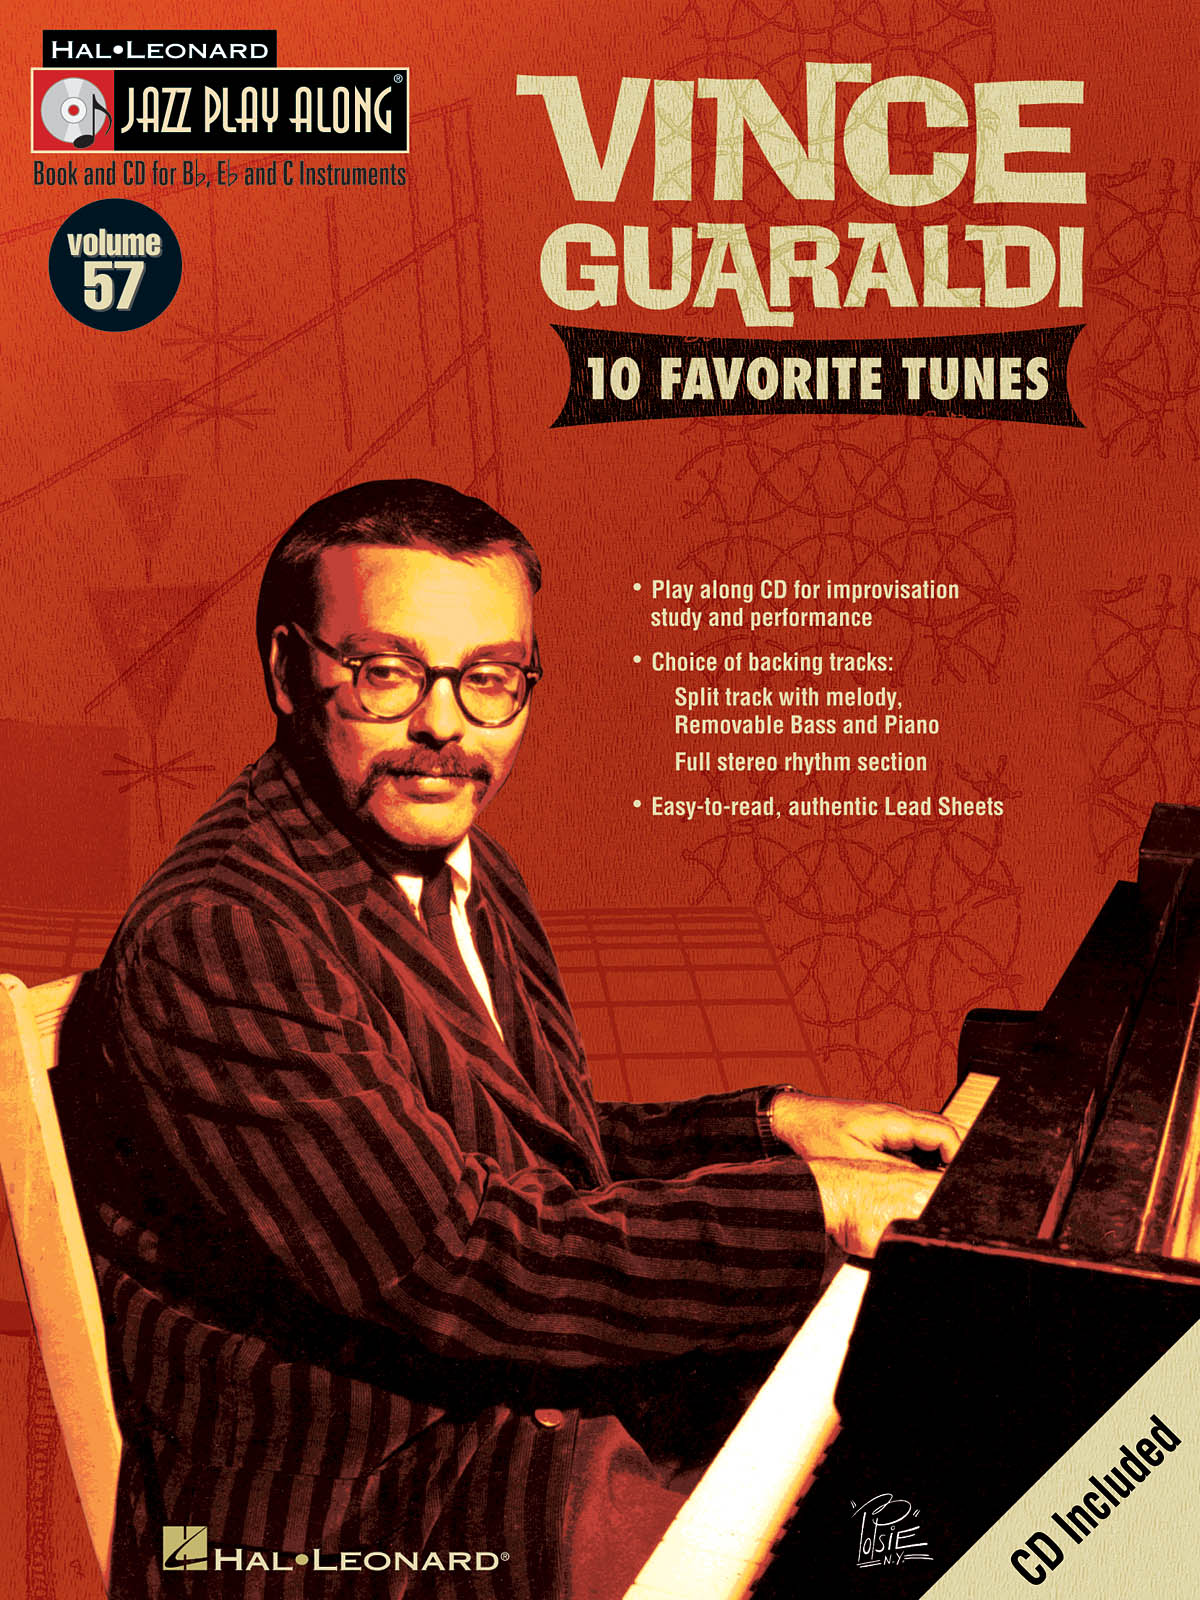 Vince Guaraldi - Jazz Play-Along Volume 57 - noty pro nástroje v ladění C